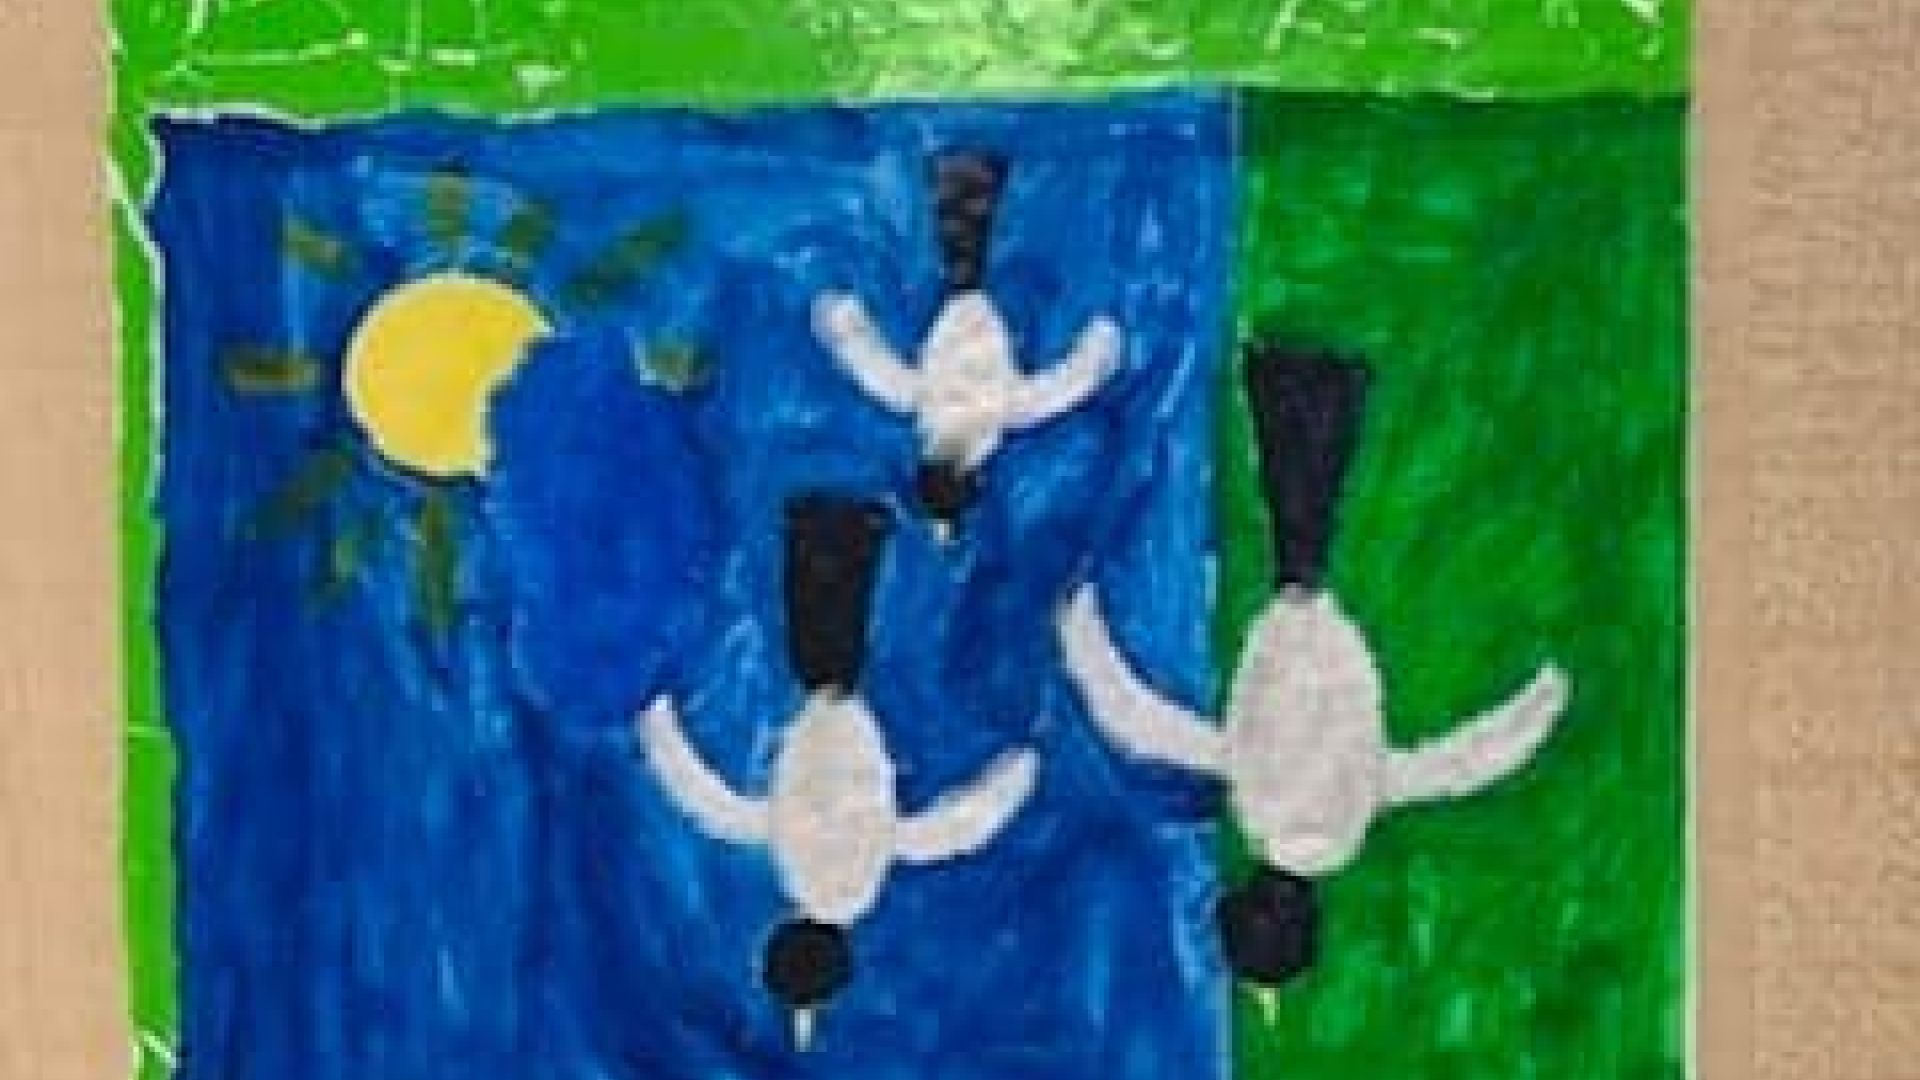 Praca wykonana farbami, przedstawiająca trzy lecące ptaki, na tle zielonej trawy i niebieskiego nieba, z wychodzącym zza chmury słońcem, oklejona na bokach zielonym papierem kolorowym. Autor: Grzegorz S.